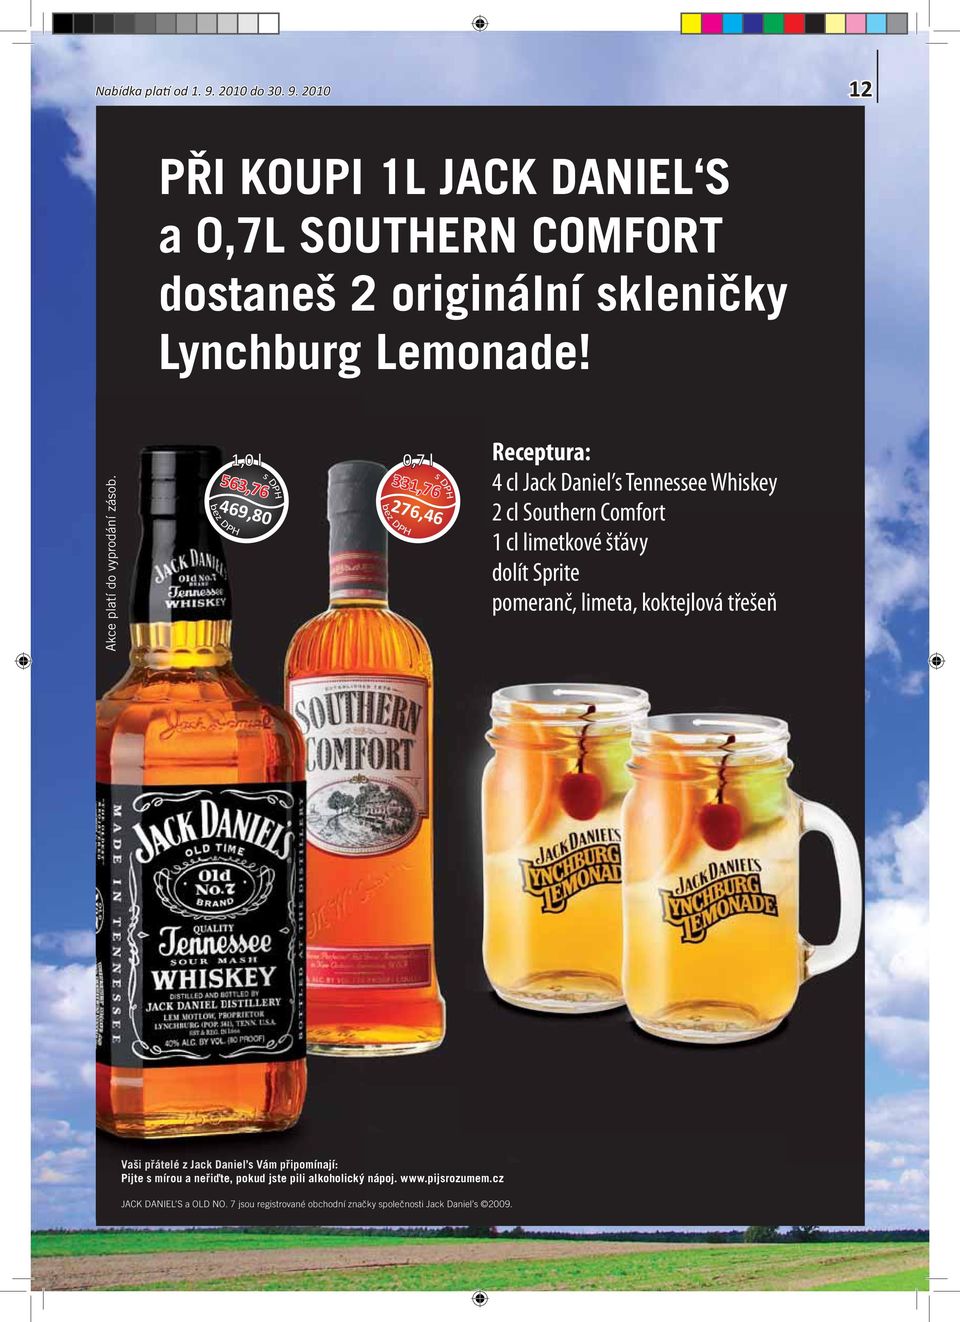 1,0 l 0,7 l 563,76 469,80 331,76 276,46 Receptura: 4 cl Jack aniel s Tennessee Whiskey 2 cl Southern Comfort 1 cl limetkové šťávy dolít Sprite pomeranč,